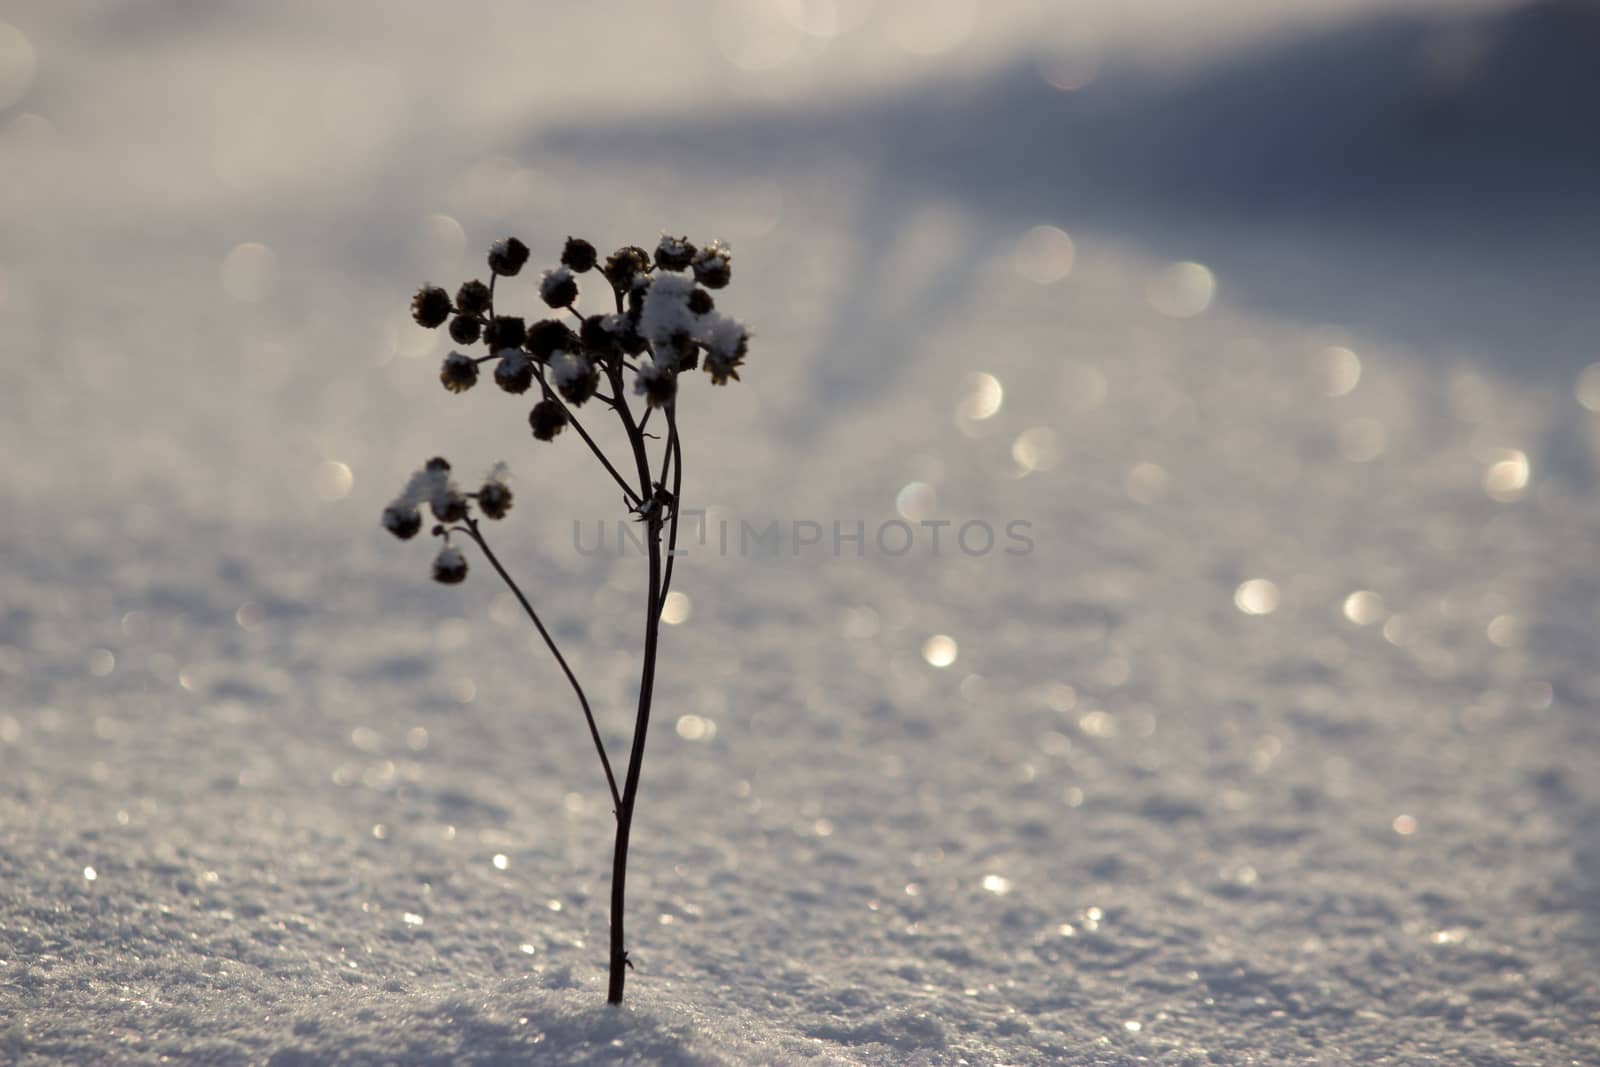 a frozen dry plant, winter landscape, snow